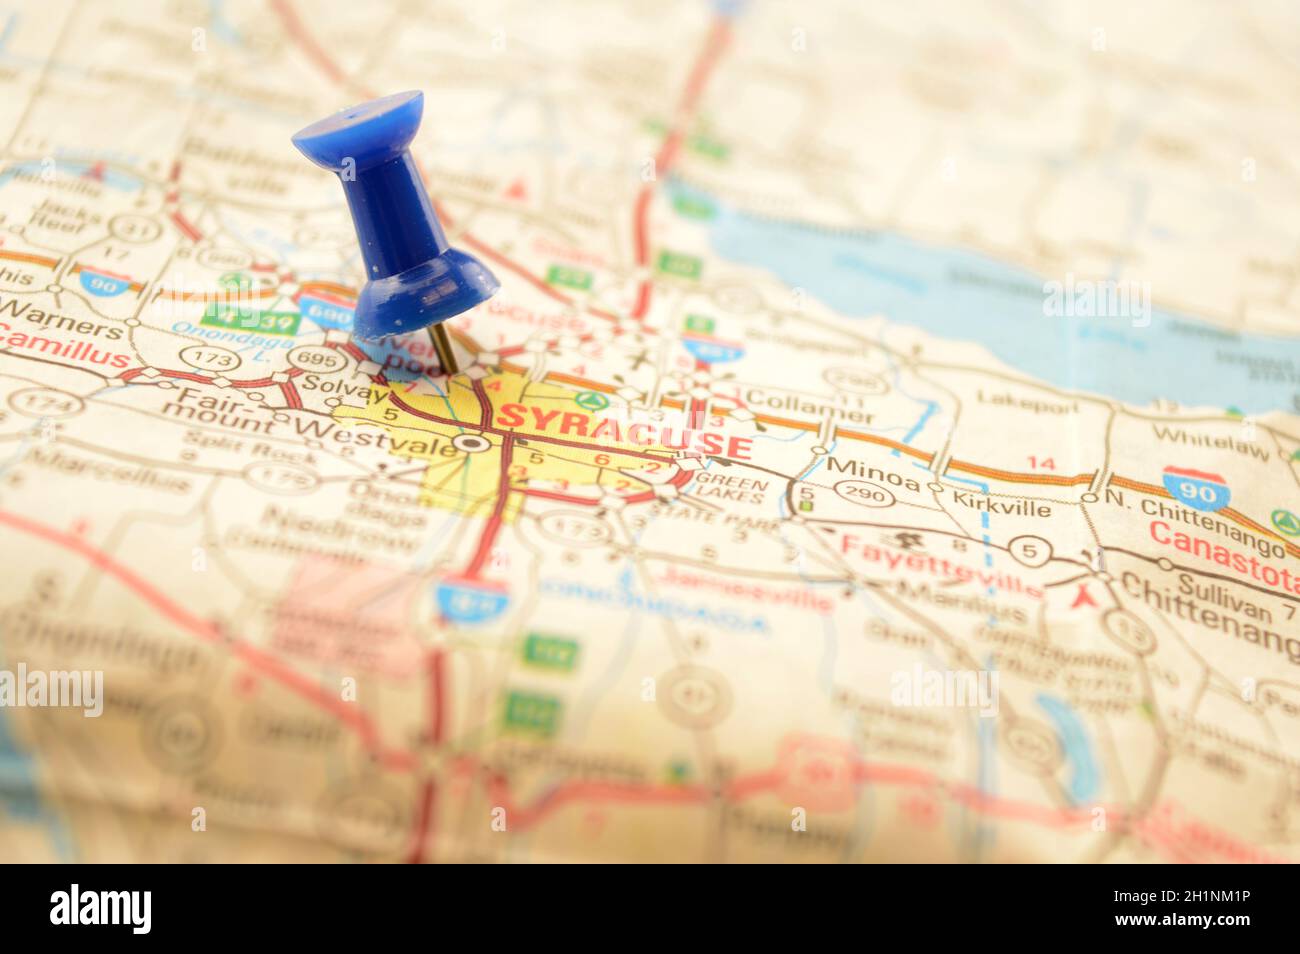 Une épingle bleue enfoncée dans une carte détaillant le point d'intérêt se référant à la place nommée Syracuse, New York, des États-Unis d'Amérique. Banque D'Images